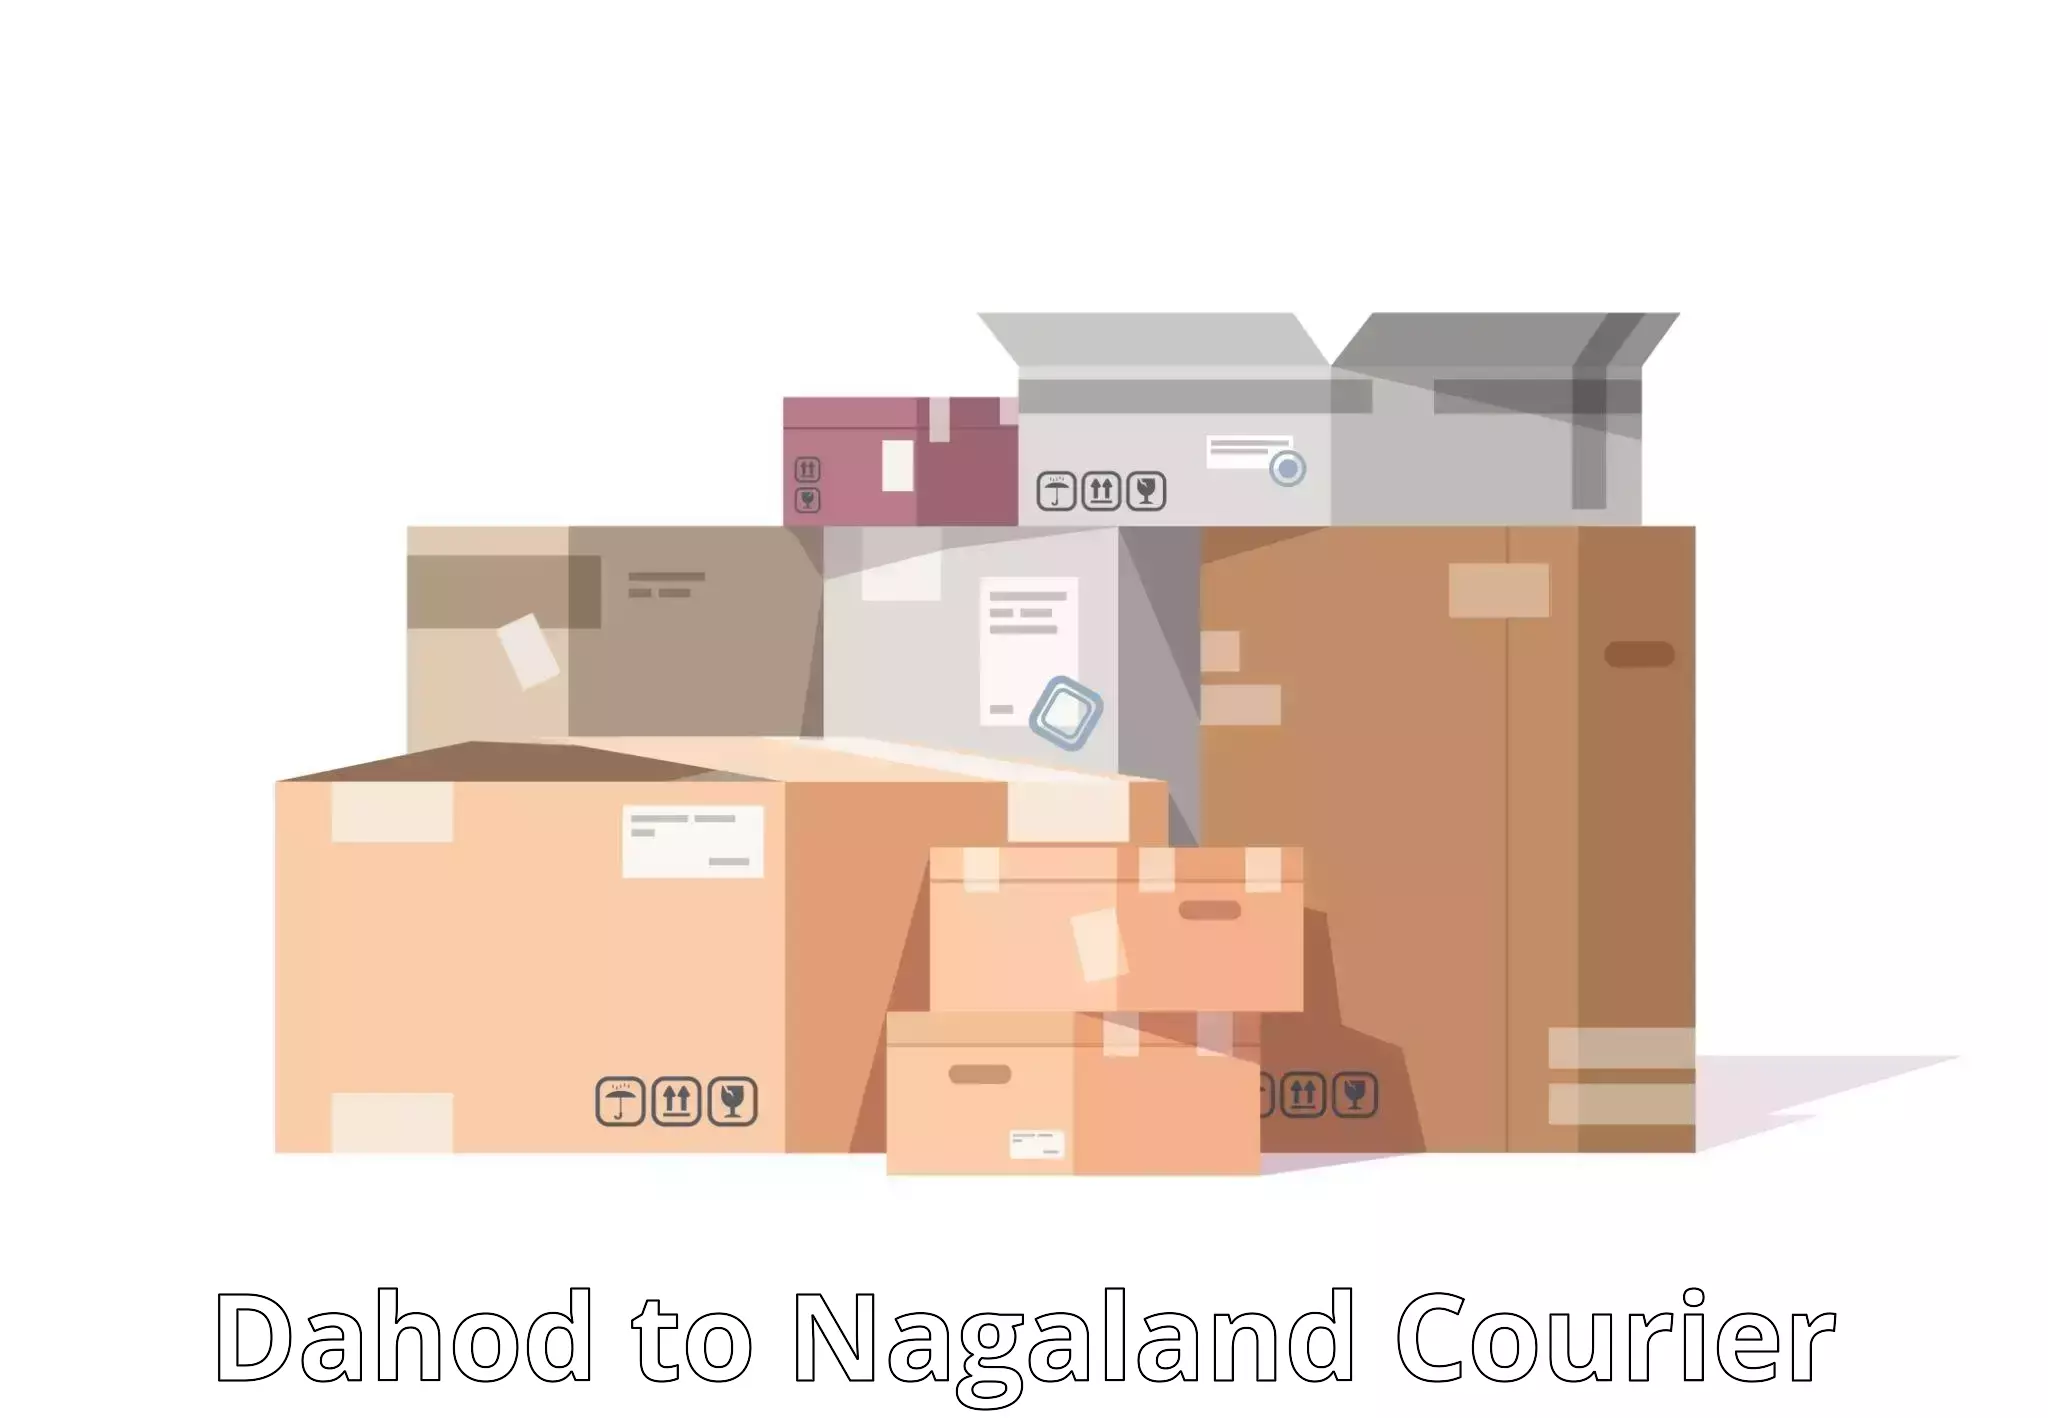 Premium courier services Dahod to Nagaland